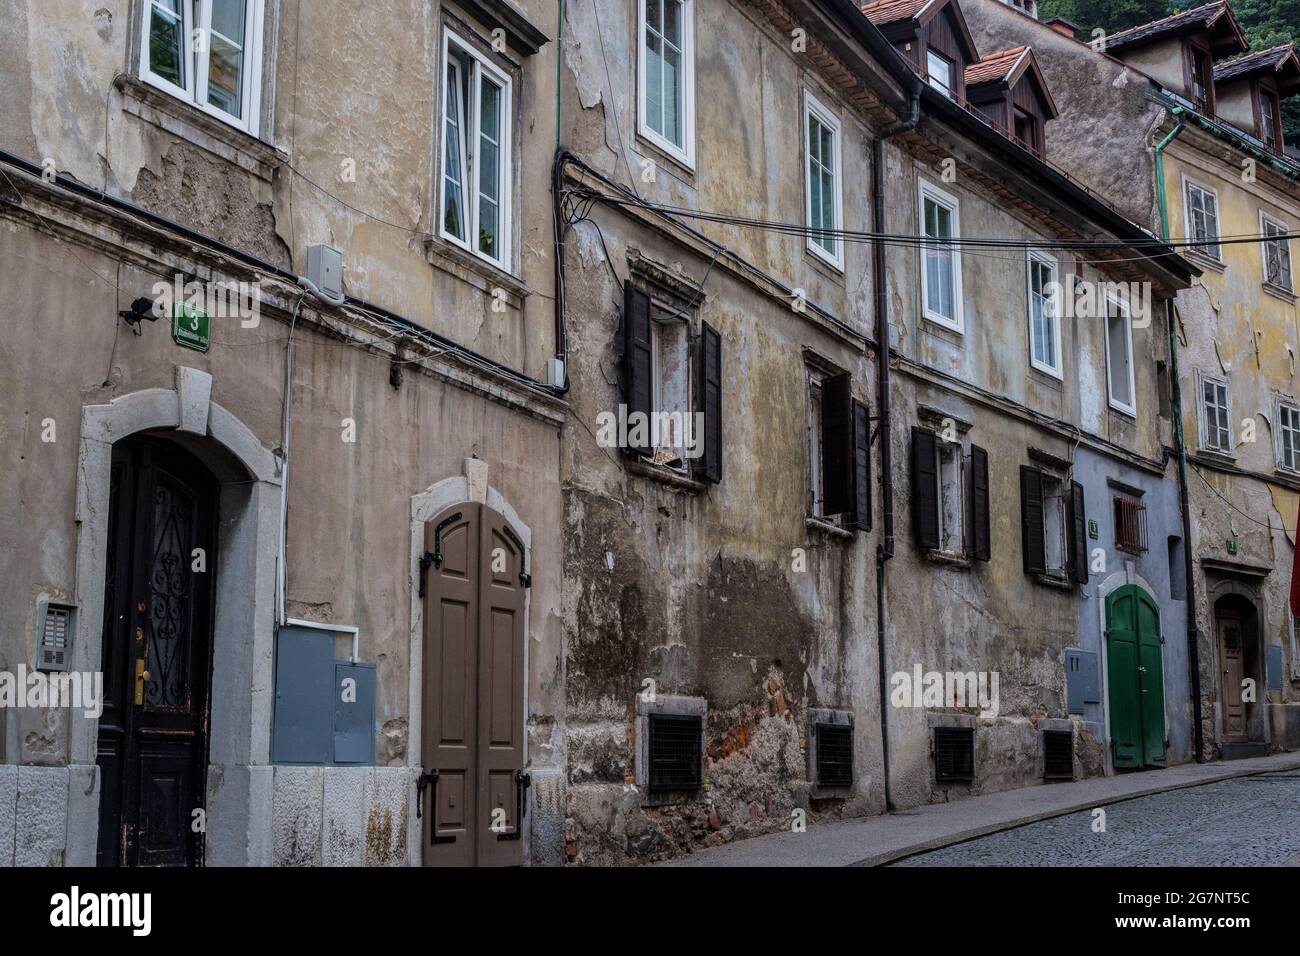 Ljubljana, Slovenia - September 11, 2017: View of an Old Building in Ljubljana Old Town Stock Photo